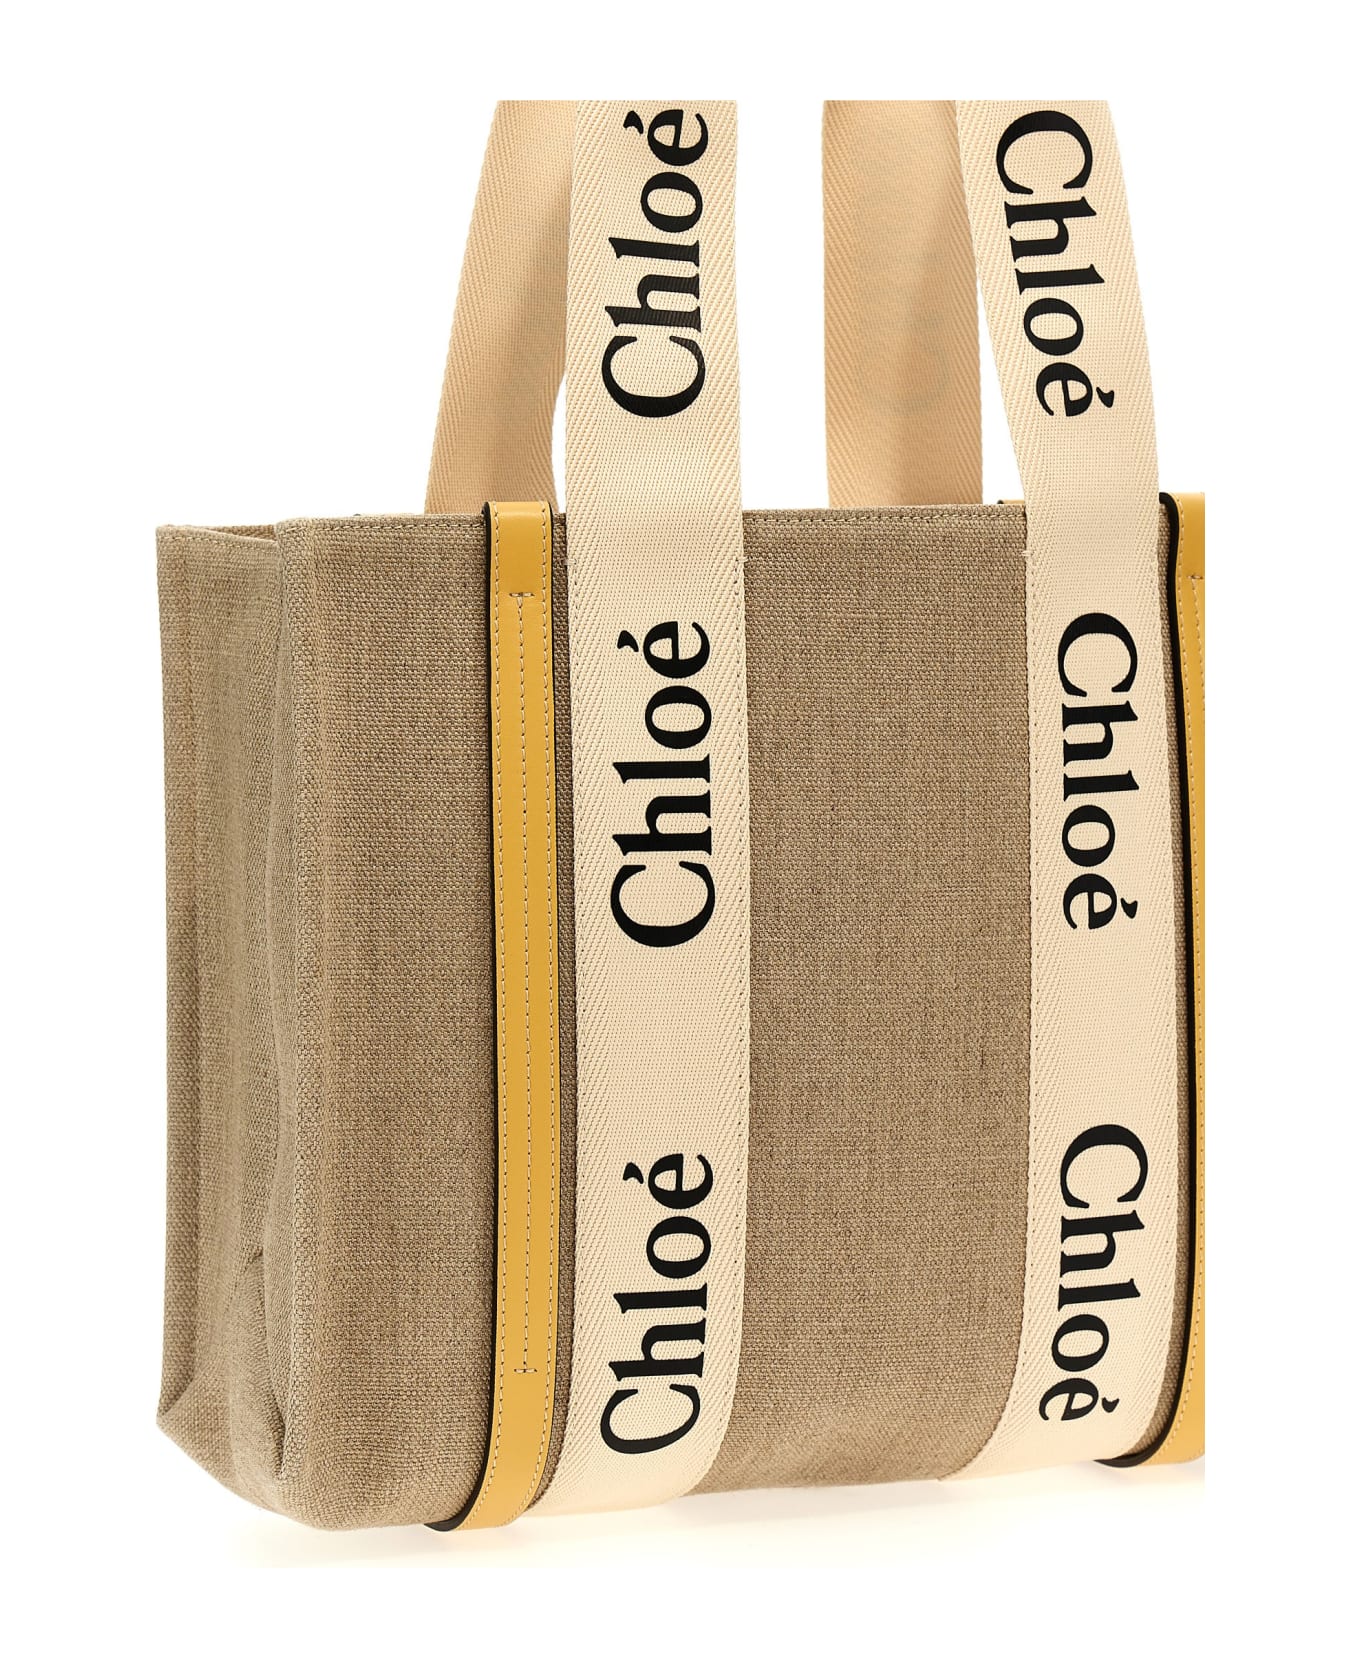 Chloé Woody Medium Tote Bag - Yellow